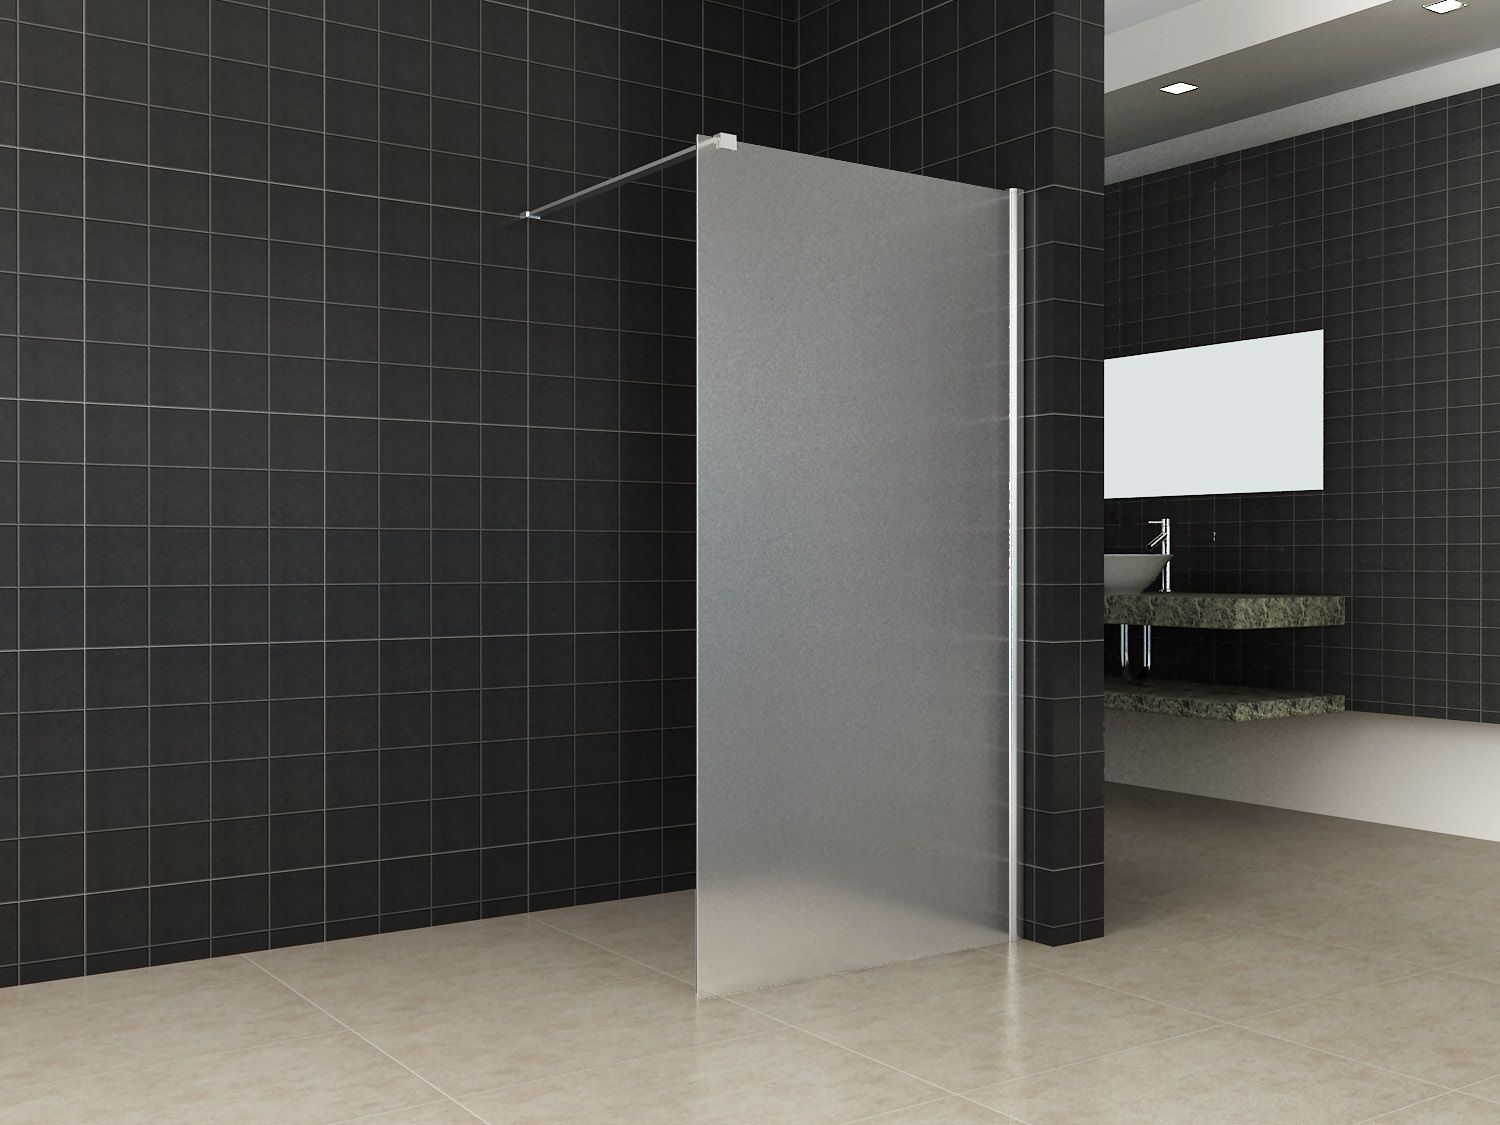 Verlichten vrijgesteld bellen Design douchewand voor inloopdouche, diverse maten uit voorraad leverbaar